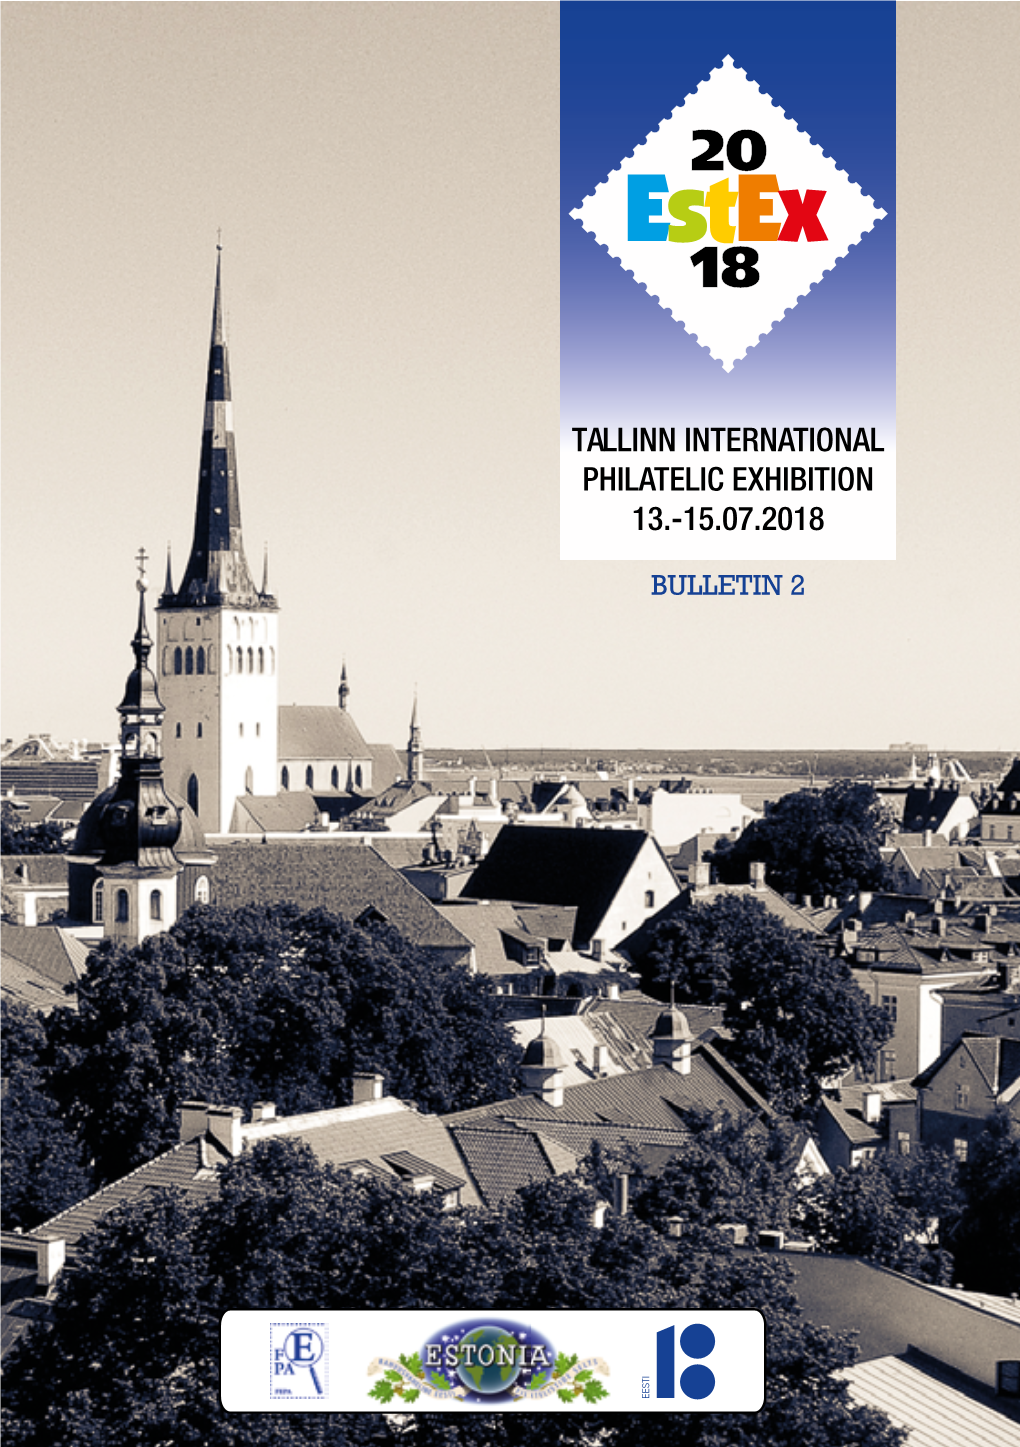 Tallinn International Philatelic Exhibition 13.-15.07.2018